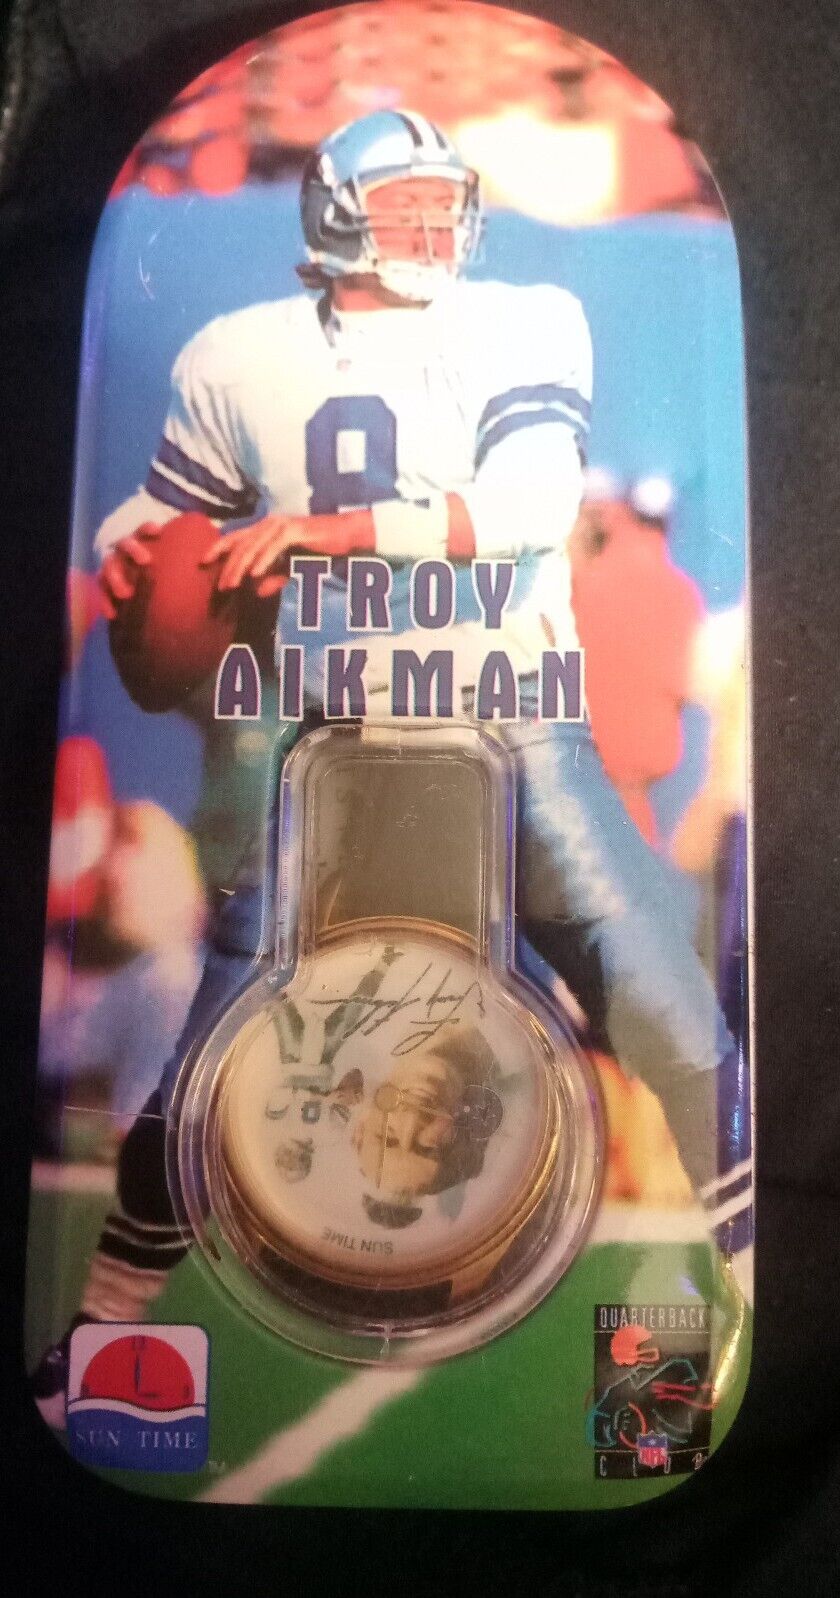 Troy Aikman Limited Edition Sun Time Watch 1995 NIB NOS Dallas Cowboys NFL